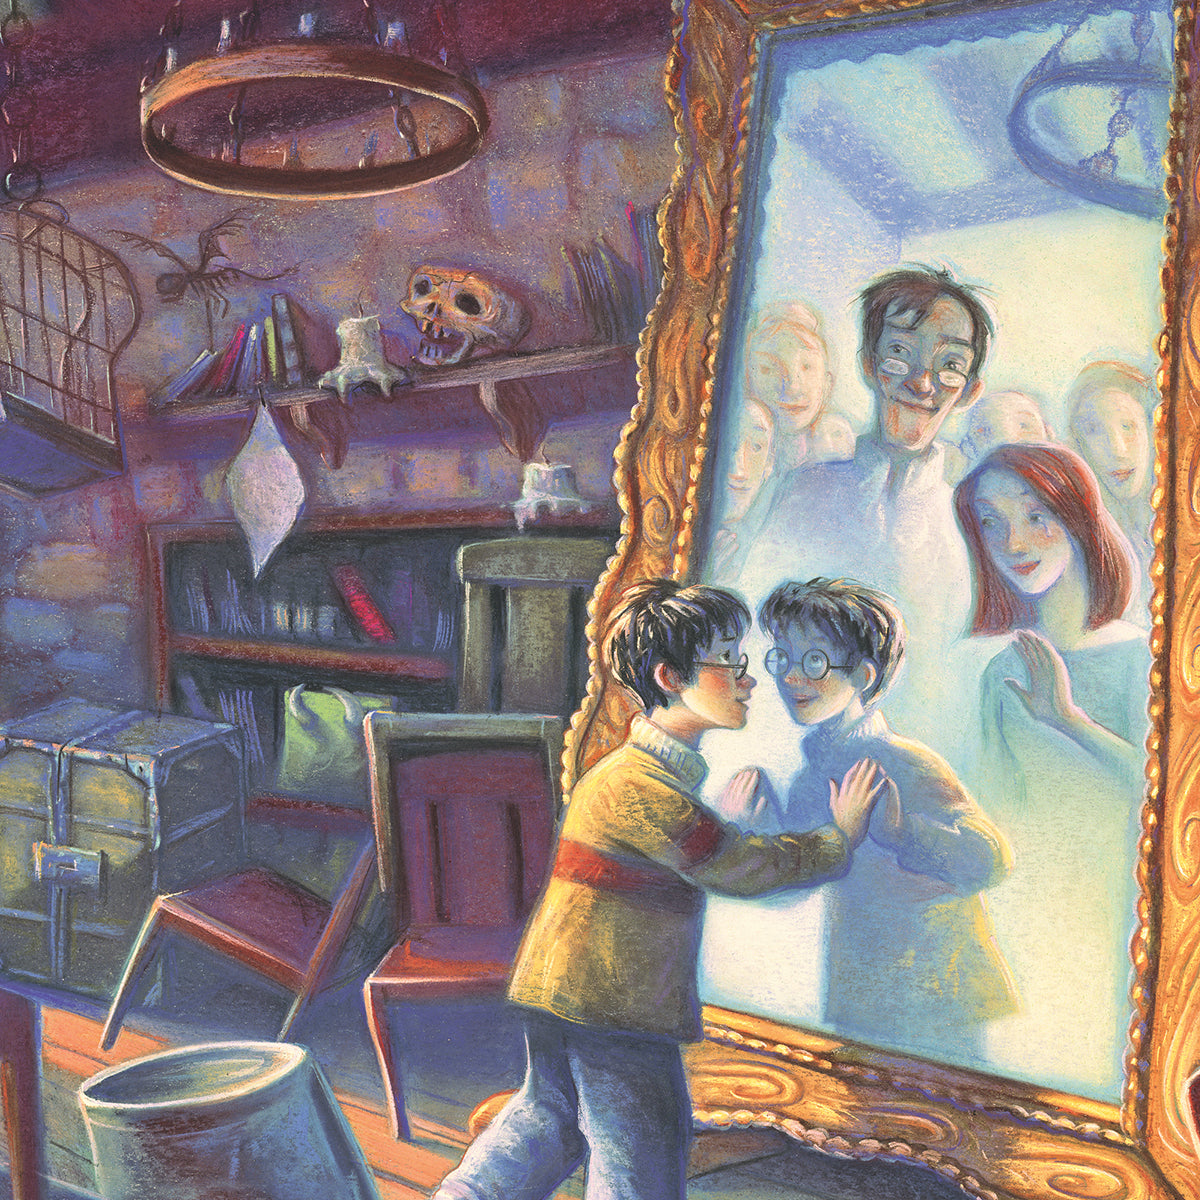 Puzzle 500 p - Harry Potter à Poudlard, Puzzle adulte, Puzzle, Produits